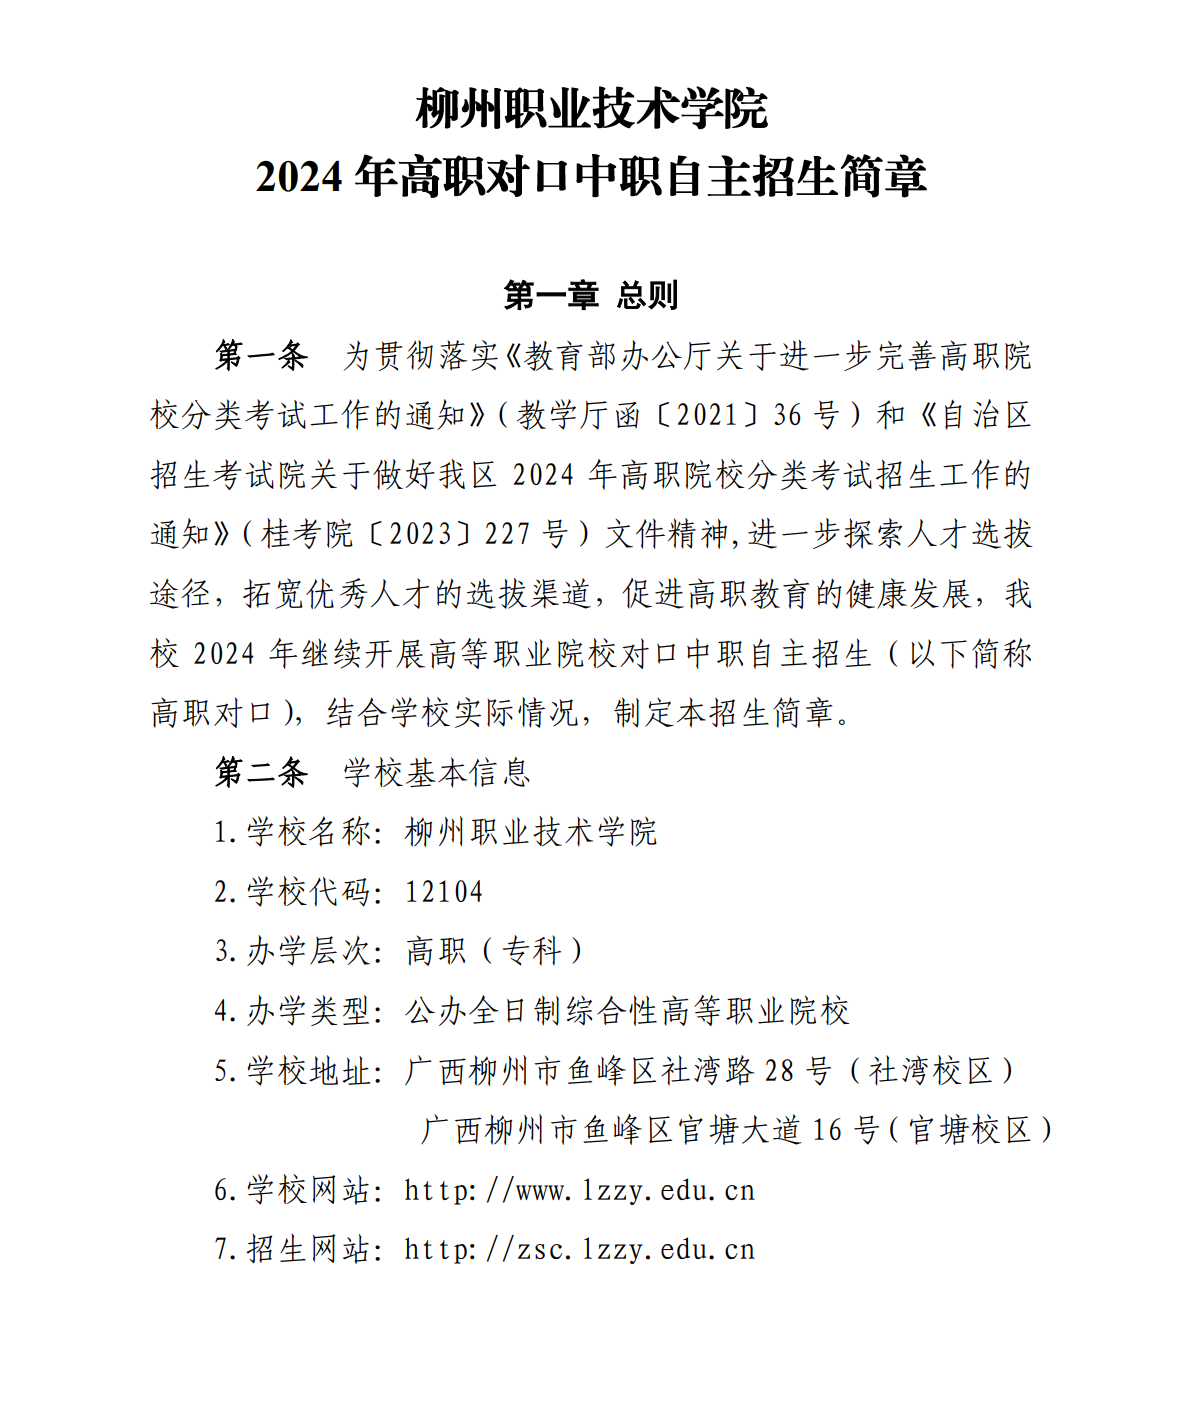 2024年柳州职业技术学院高职对口中职自主招生简章